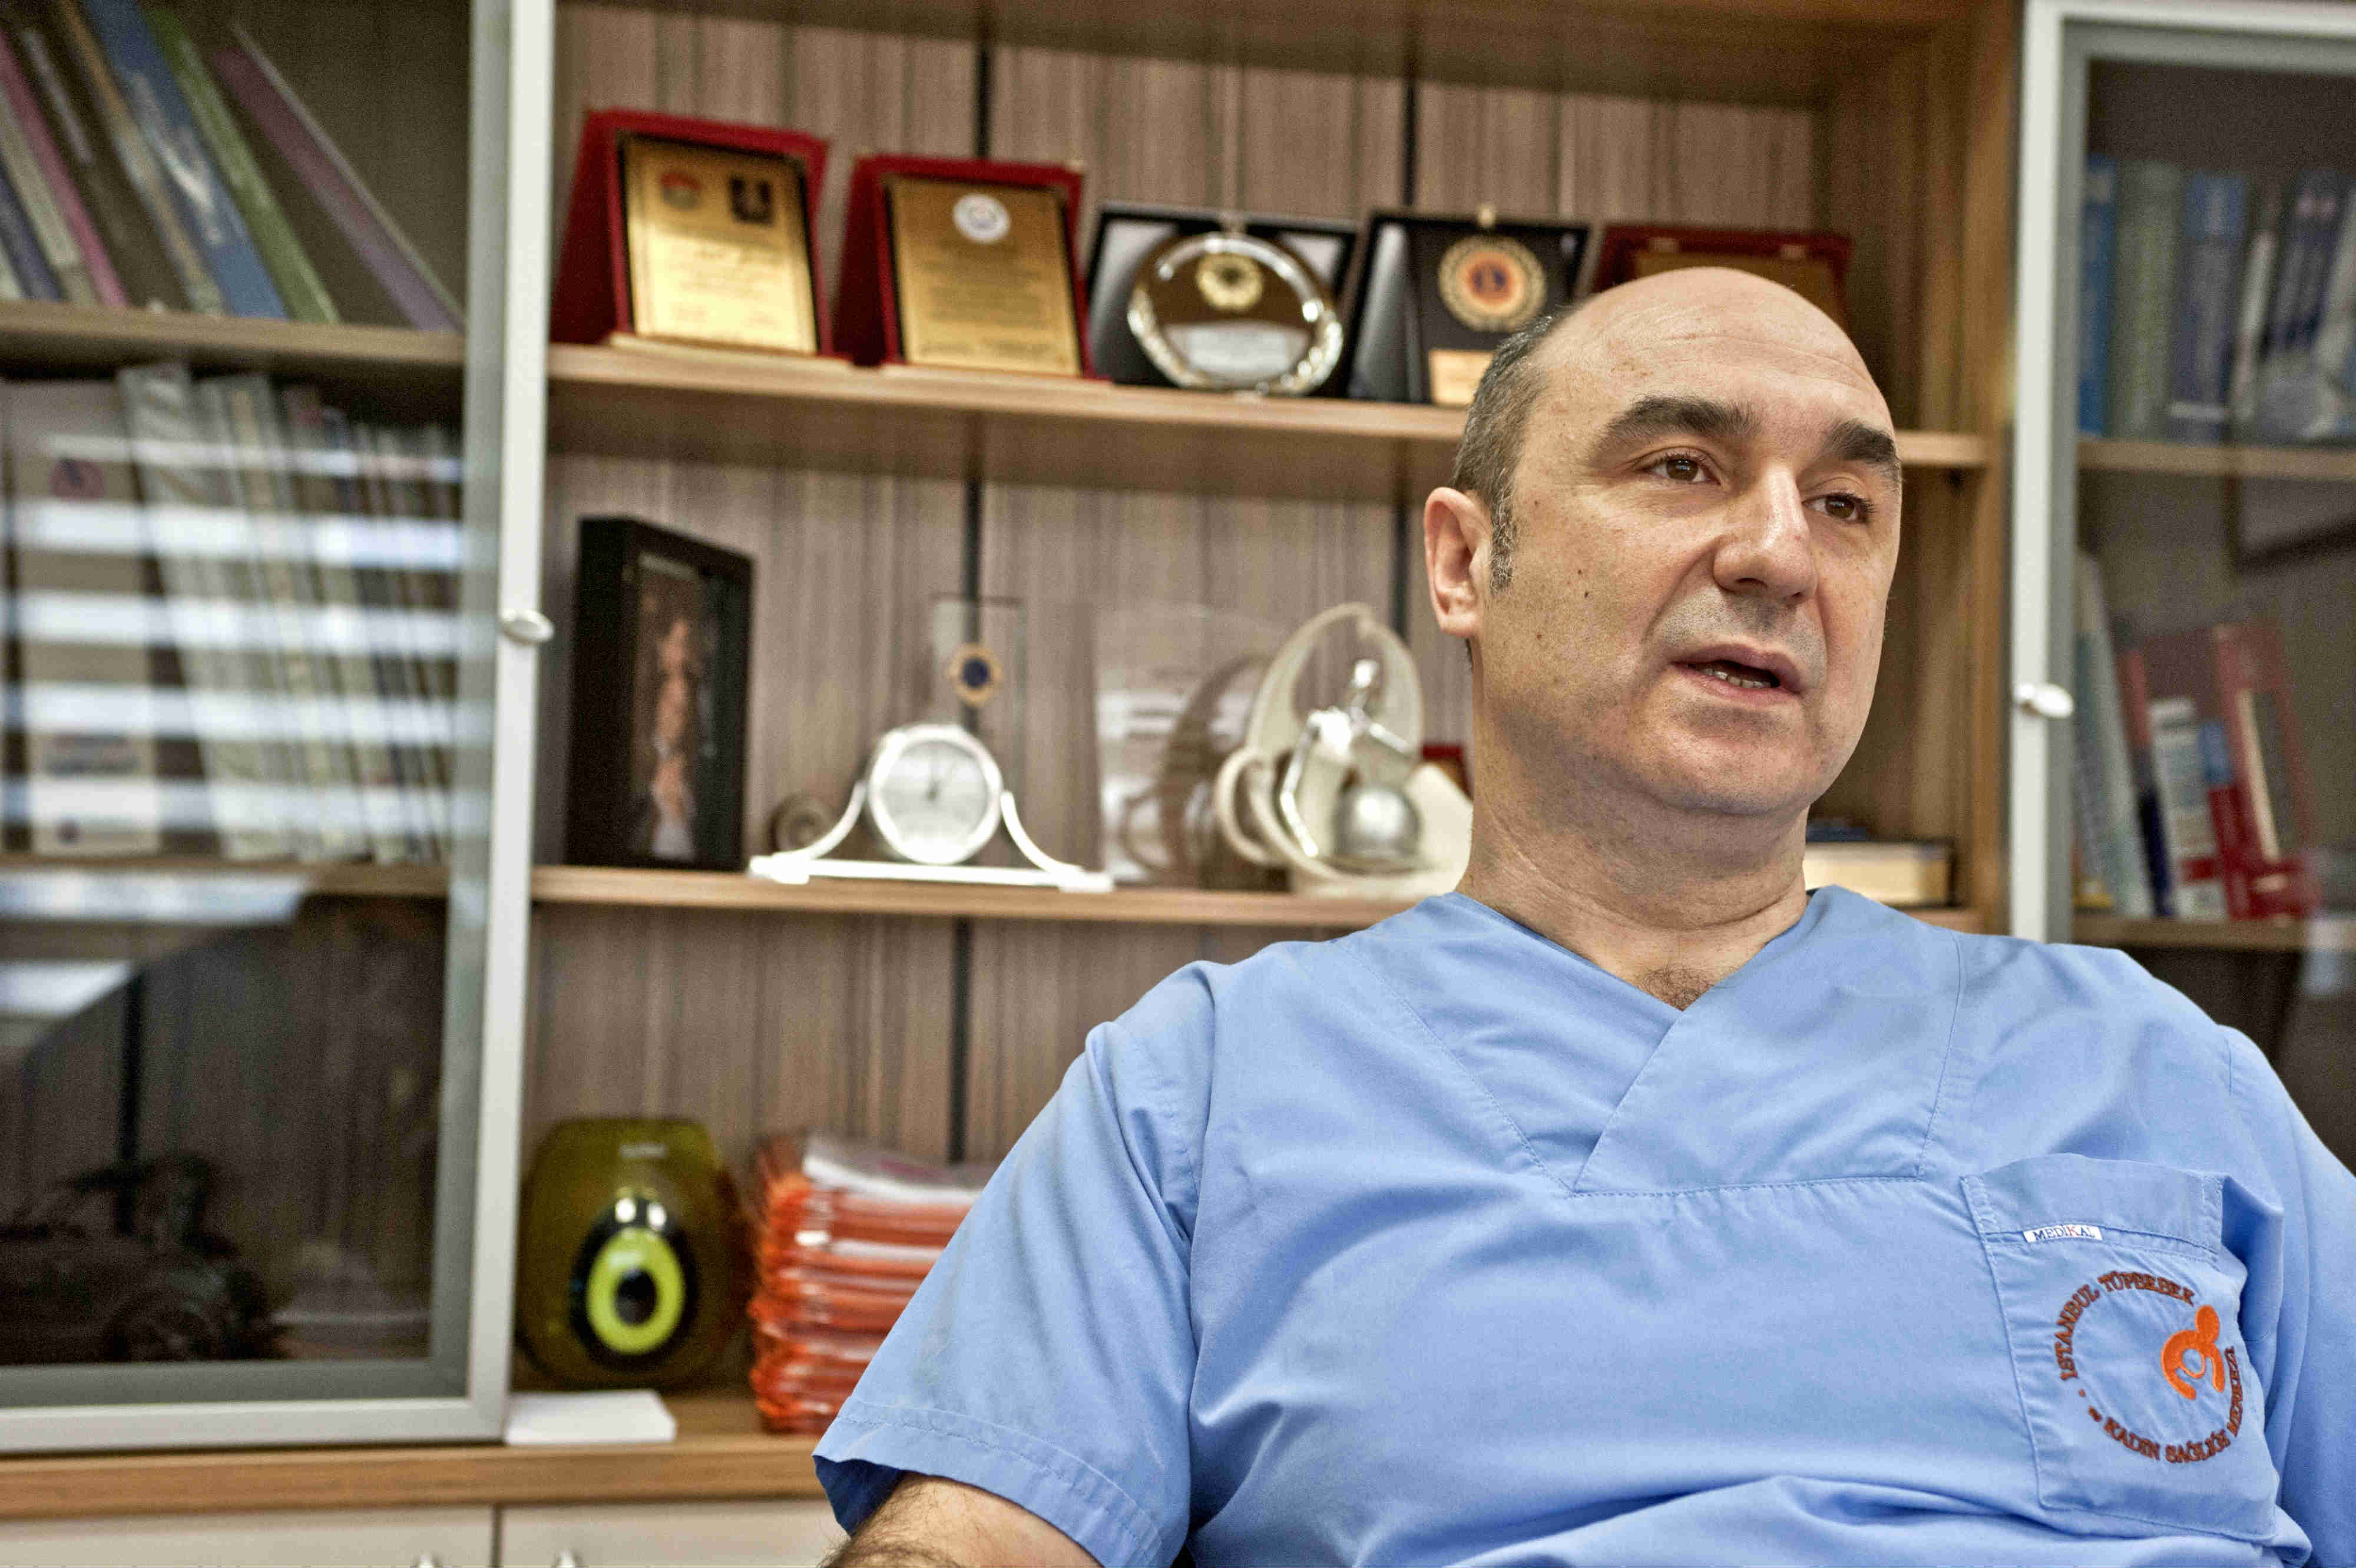 Ermeni doktorun tüp bebek merkezine OHAL kapsamında el kondu